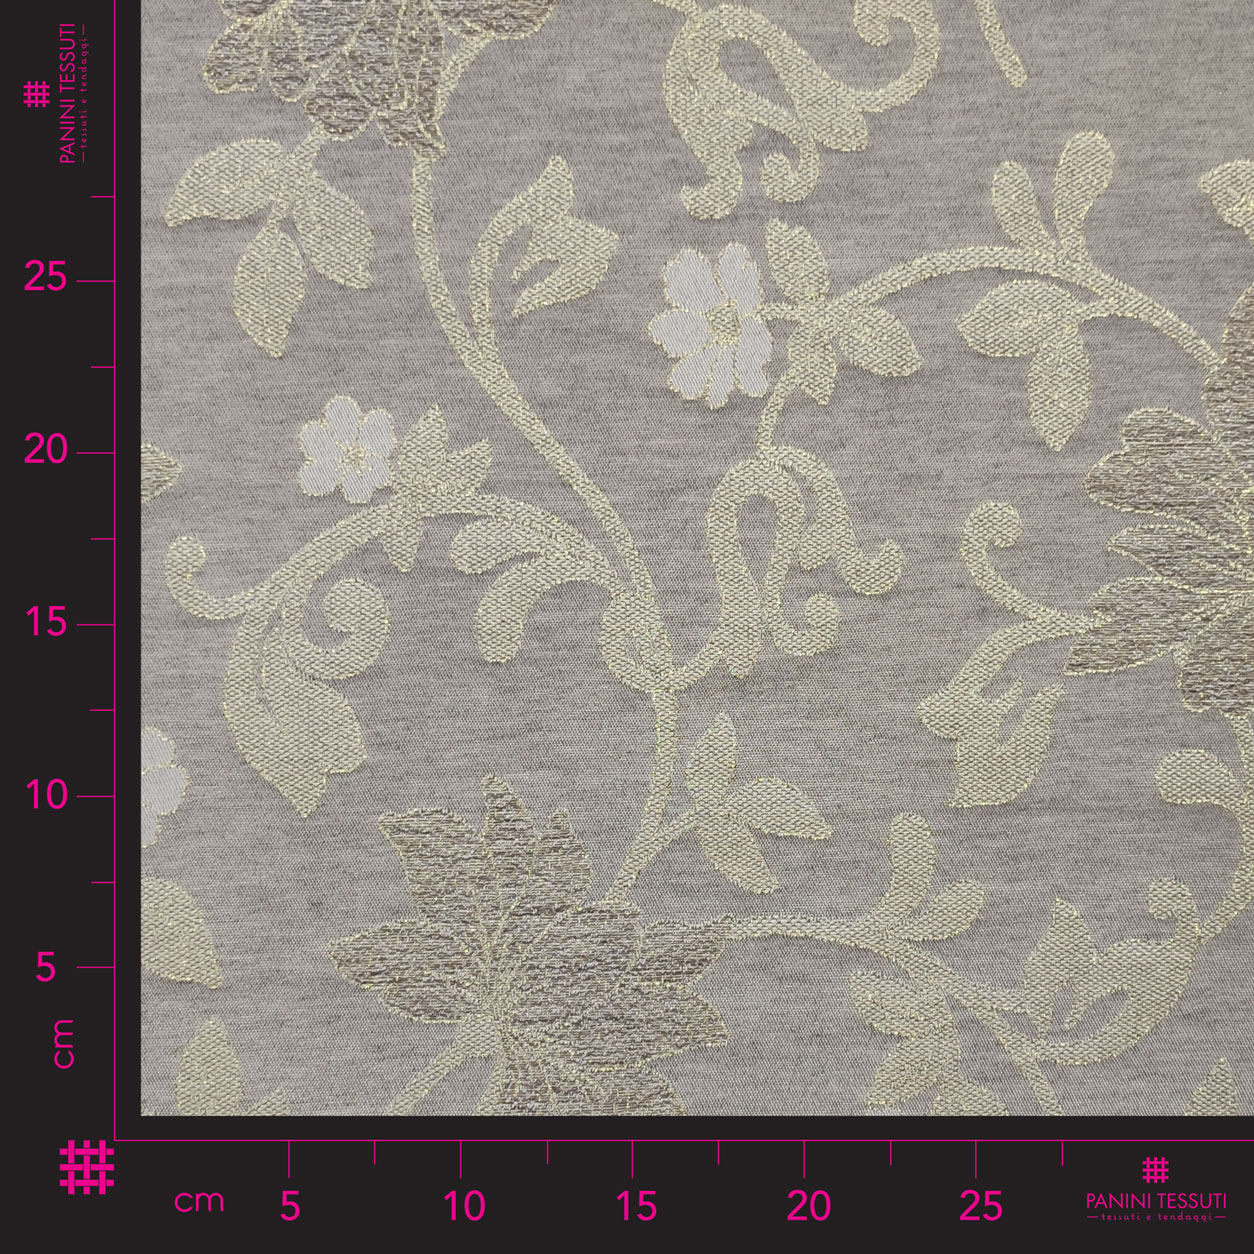 tessuto-misto-cotone-per-arredo-fiori-beige-lurex